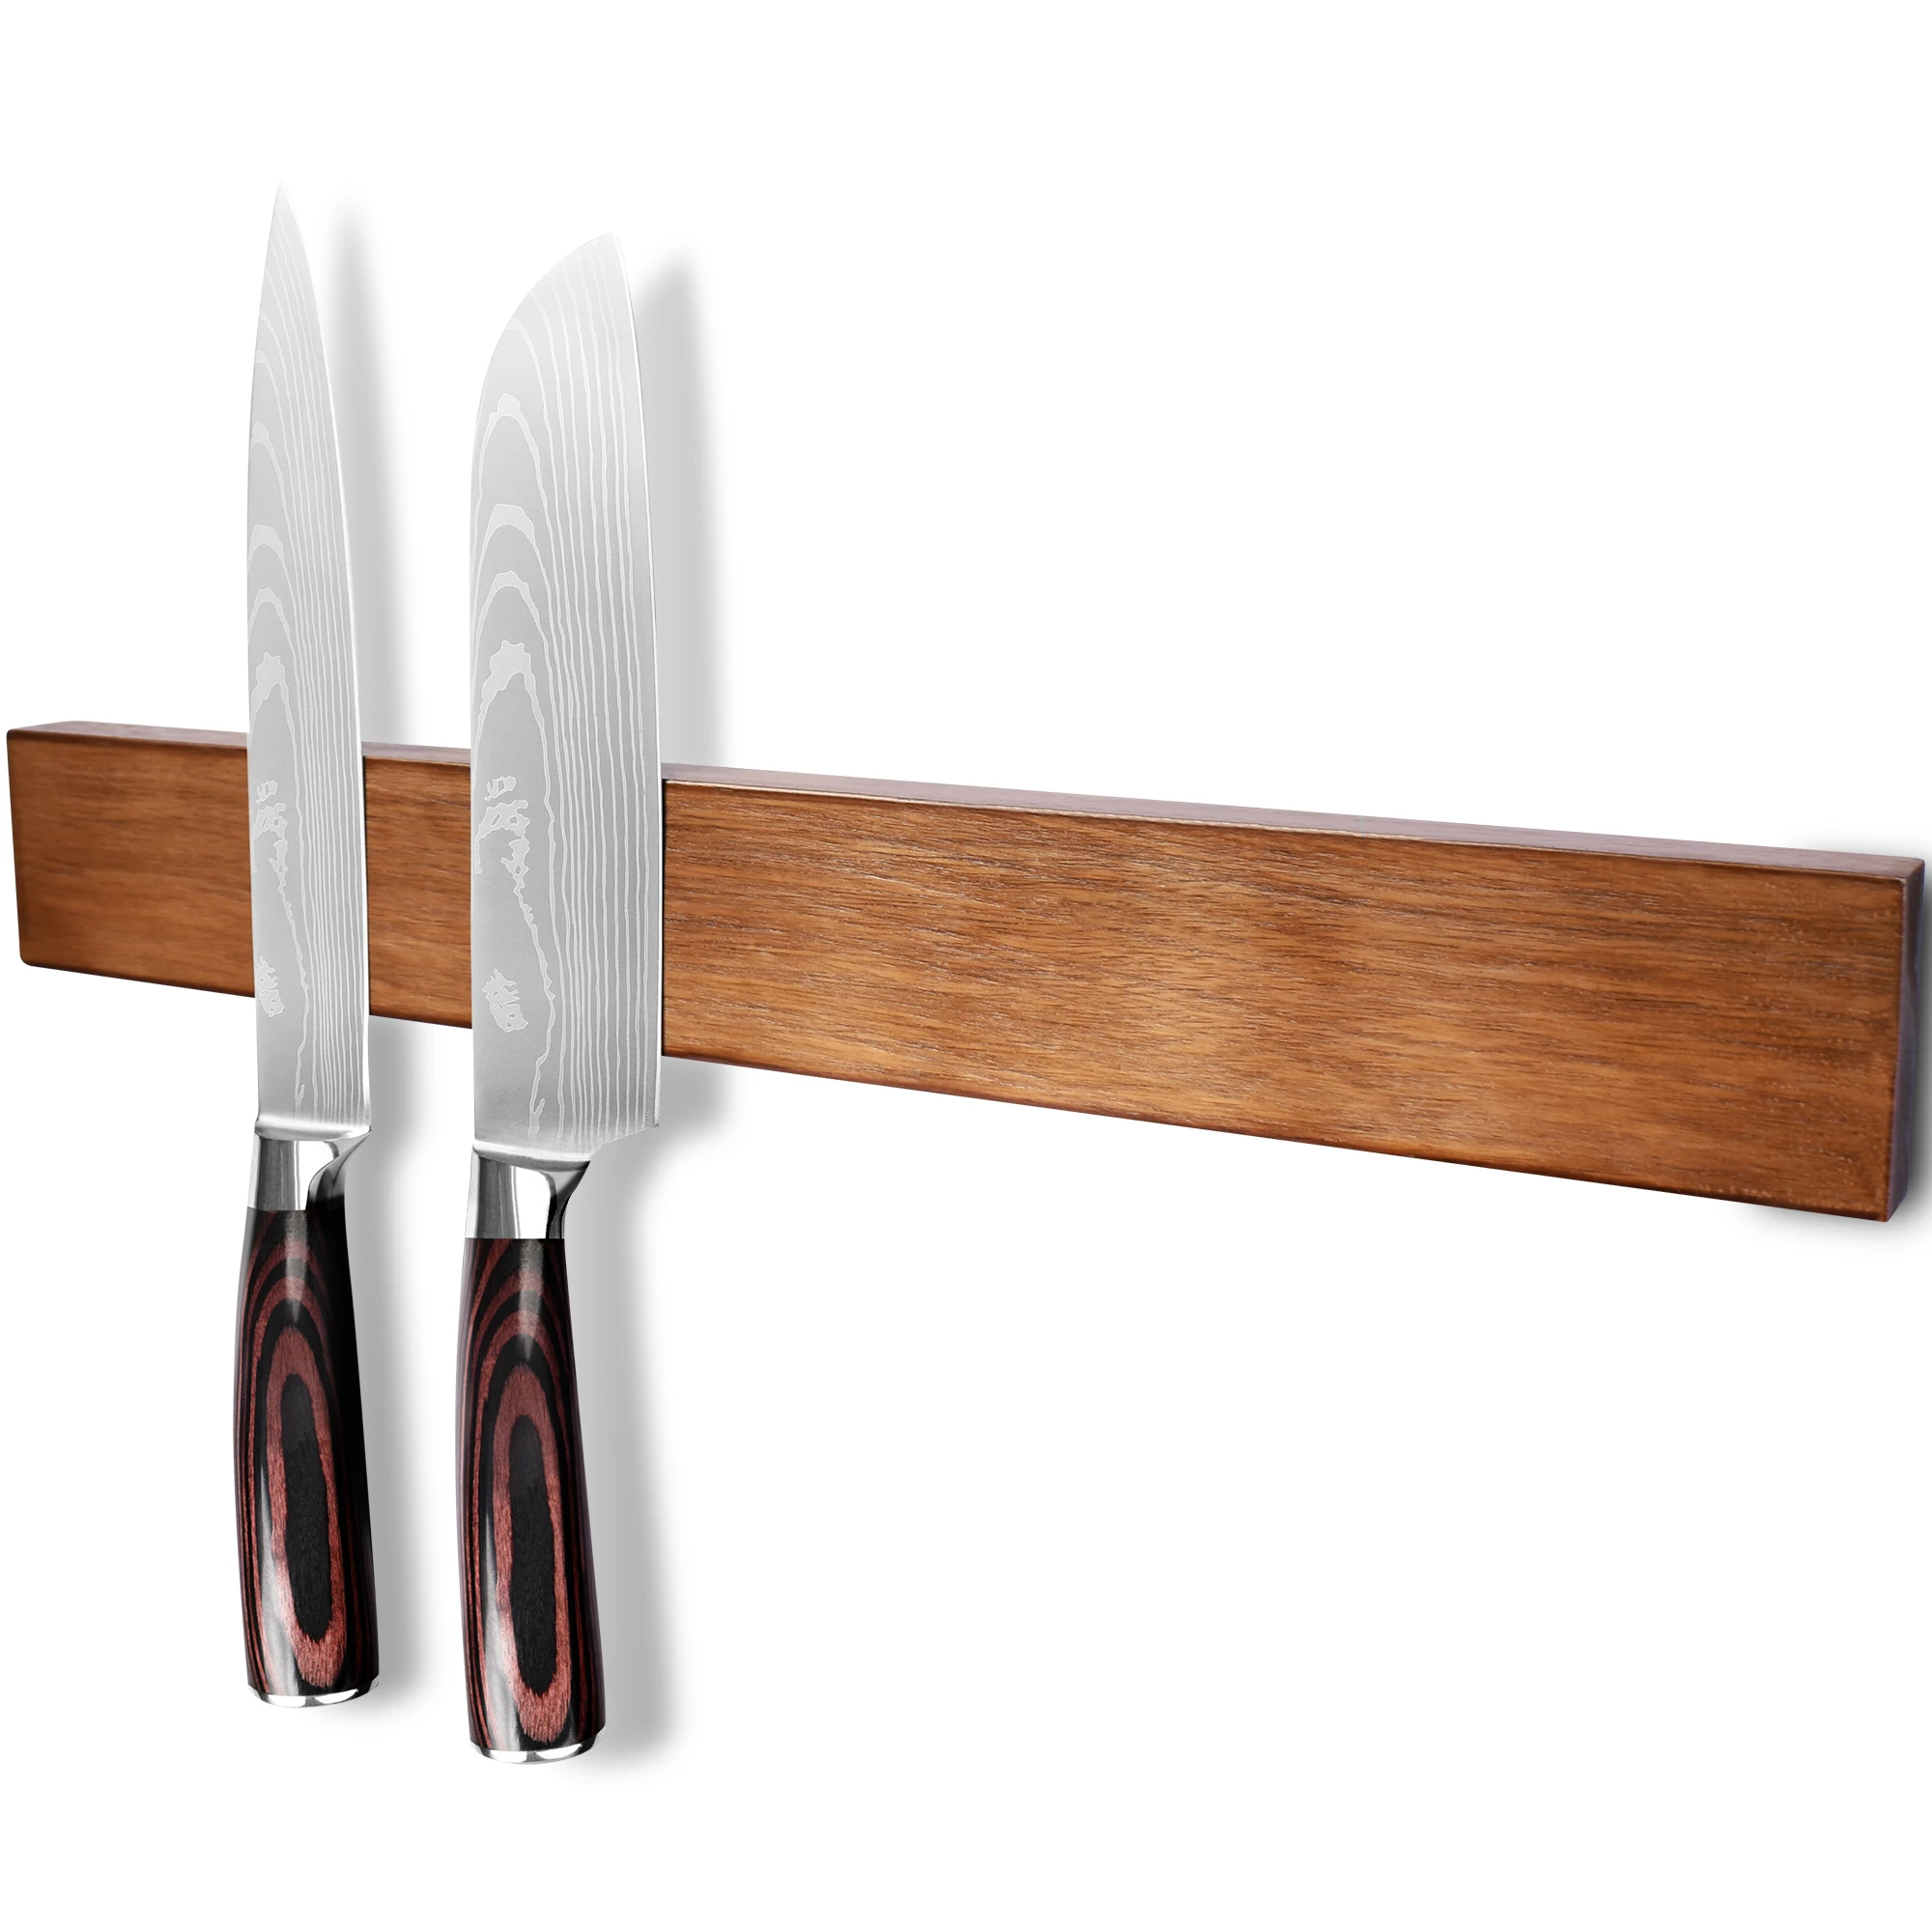 

Магнитный нож XYJ, стена с сильным неодимовым покрытием из дерева акации, стандартная подставка для ножей, кухонные принадлежности